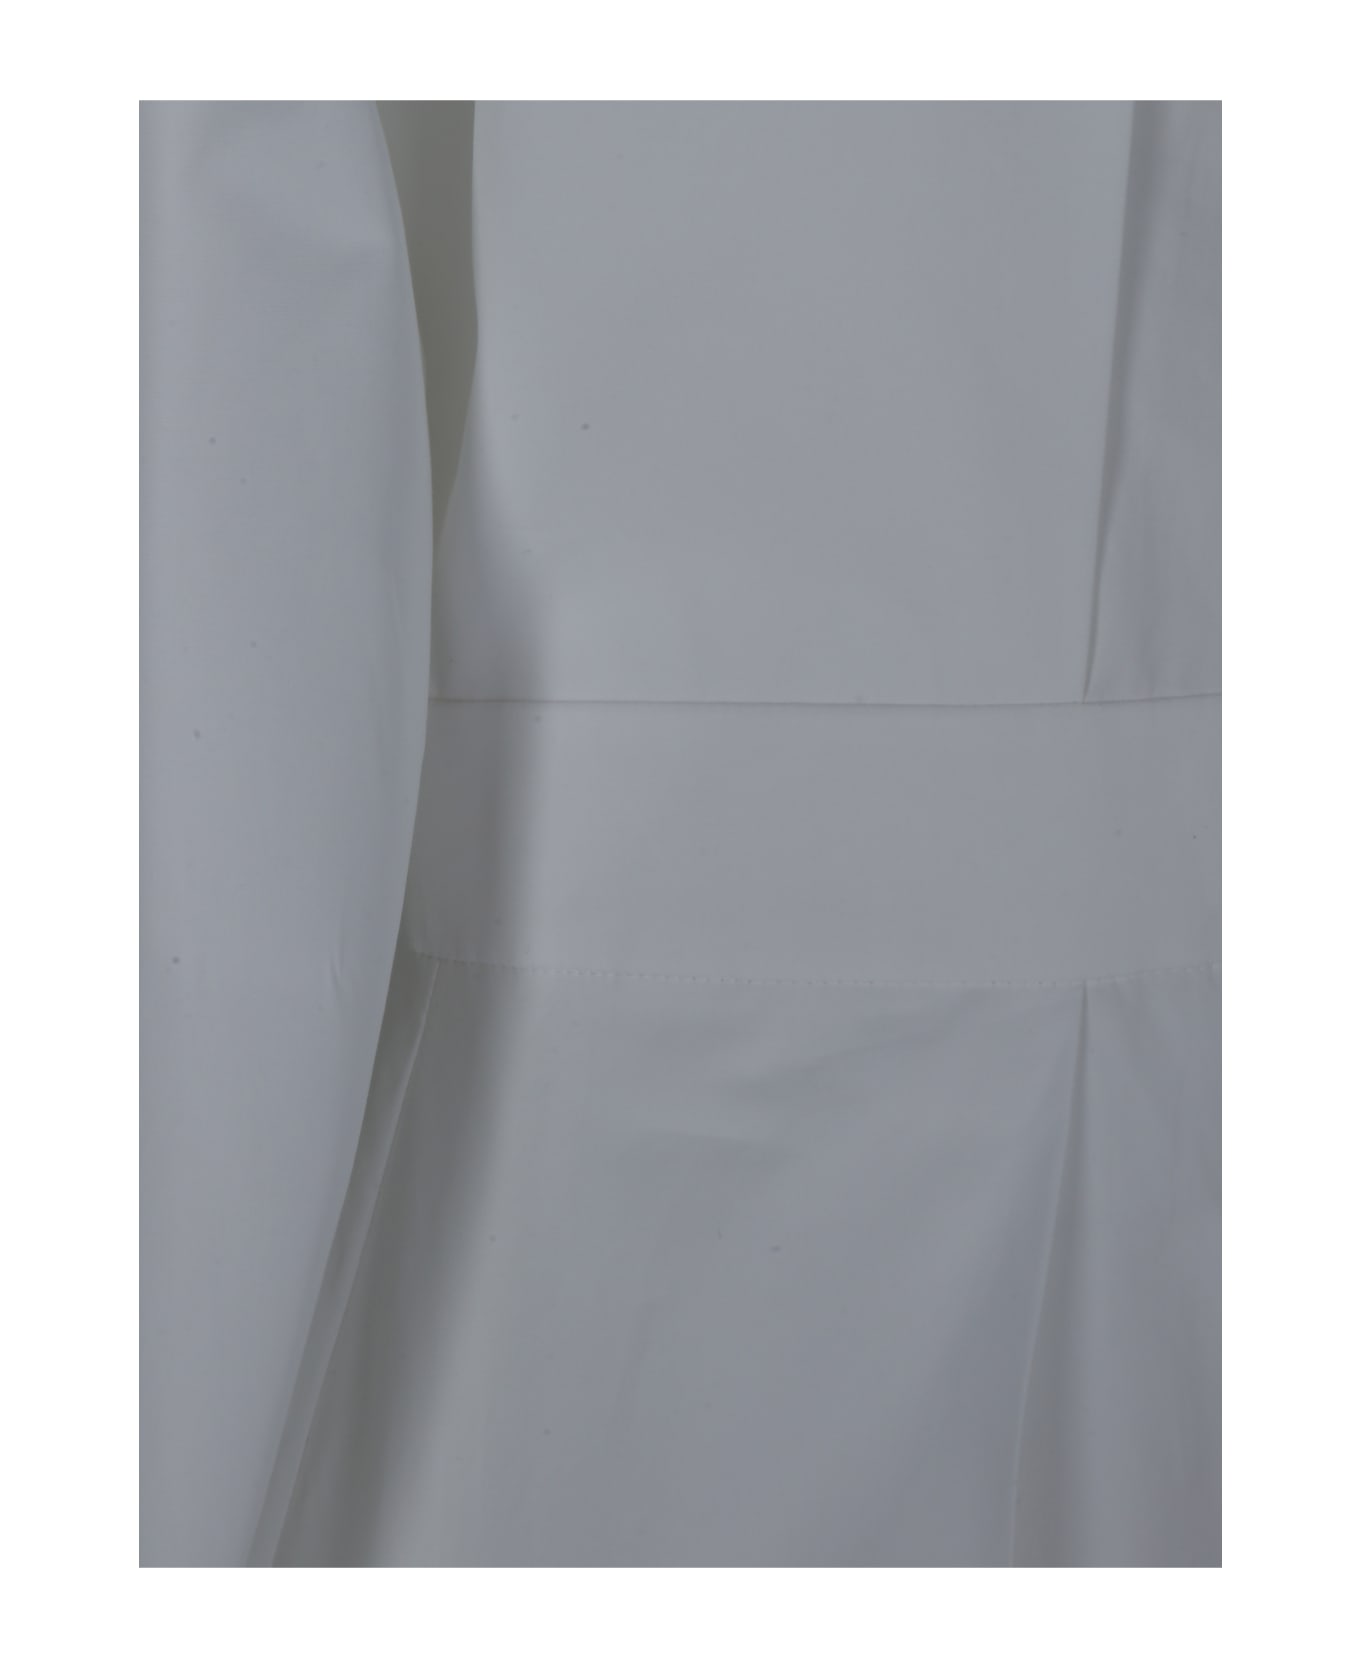 Alexander McQueen Long Shirt Dress - Bianco